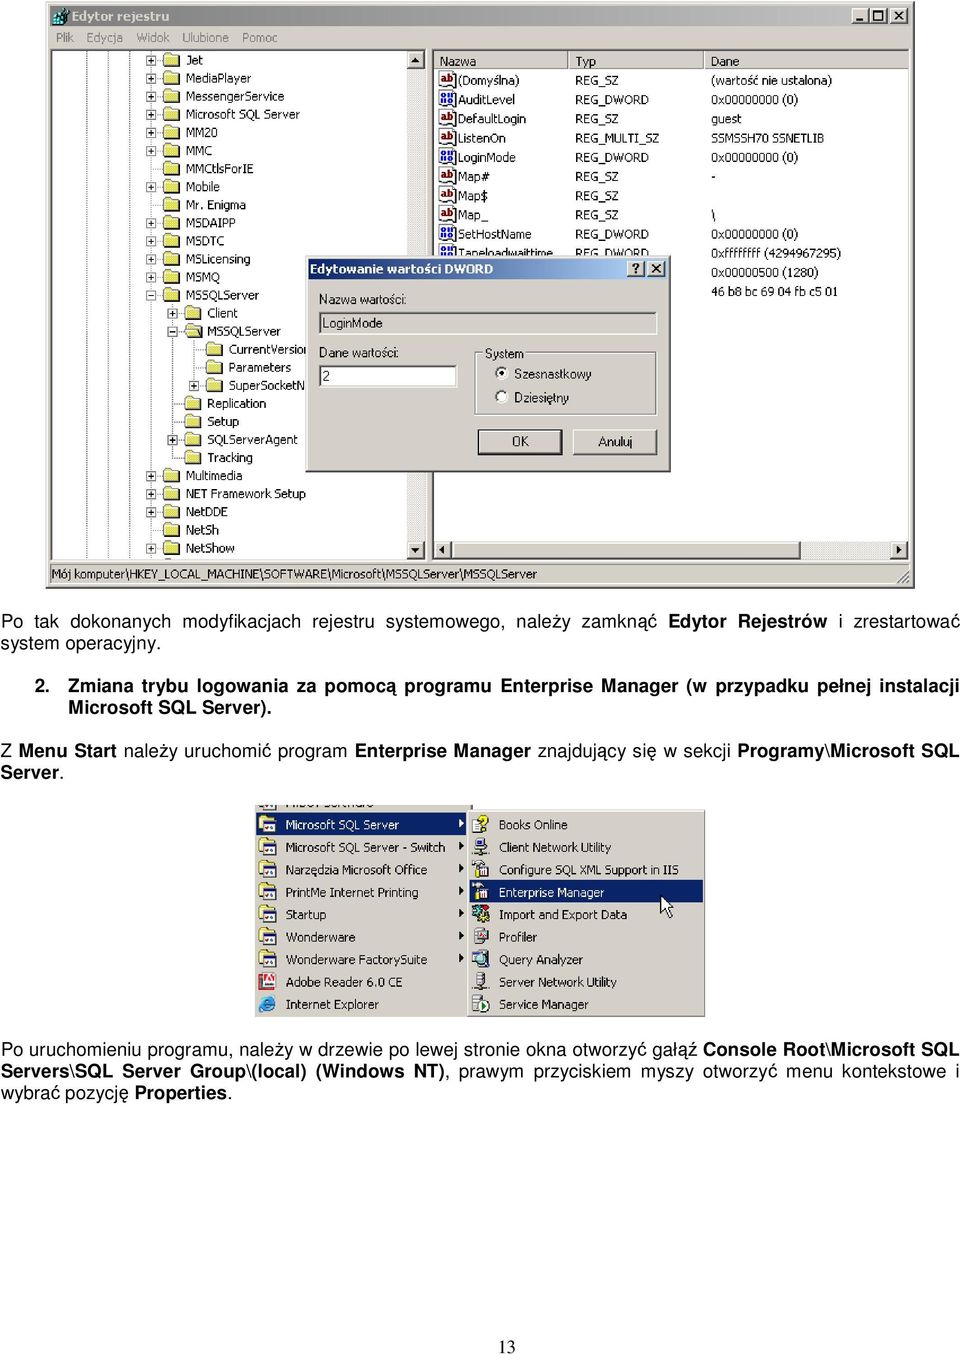 Z Menu Start naleŝy uruchomić program Enterprise Manager znajdujący się w sekcji Programy\Microsoft SQL Server.